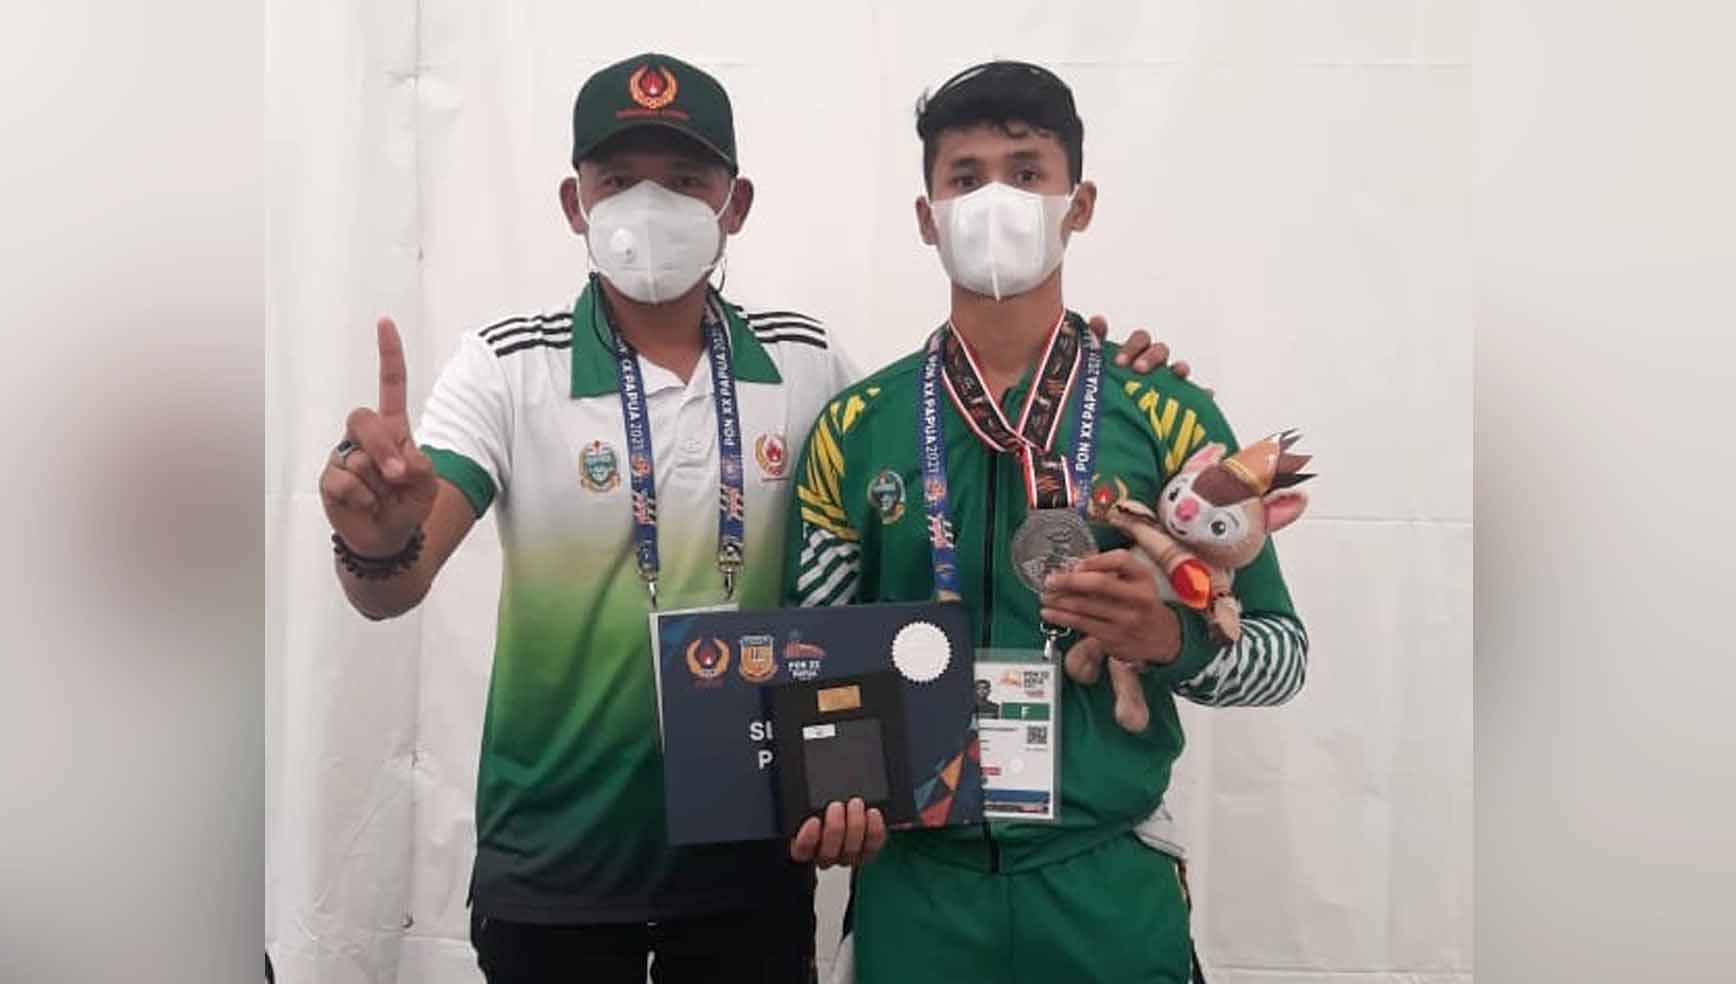 Sumut berhasil meraih medali pertama di PON Papua 2021 lewat atlet sepatu roda, Muhammad Khadafi (kanan). - INDOSPORT